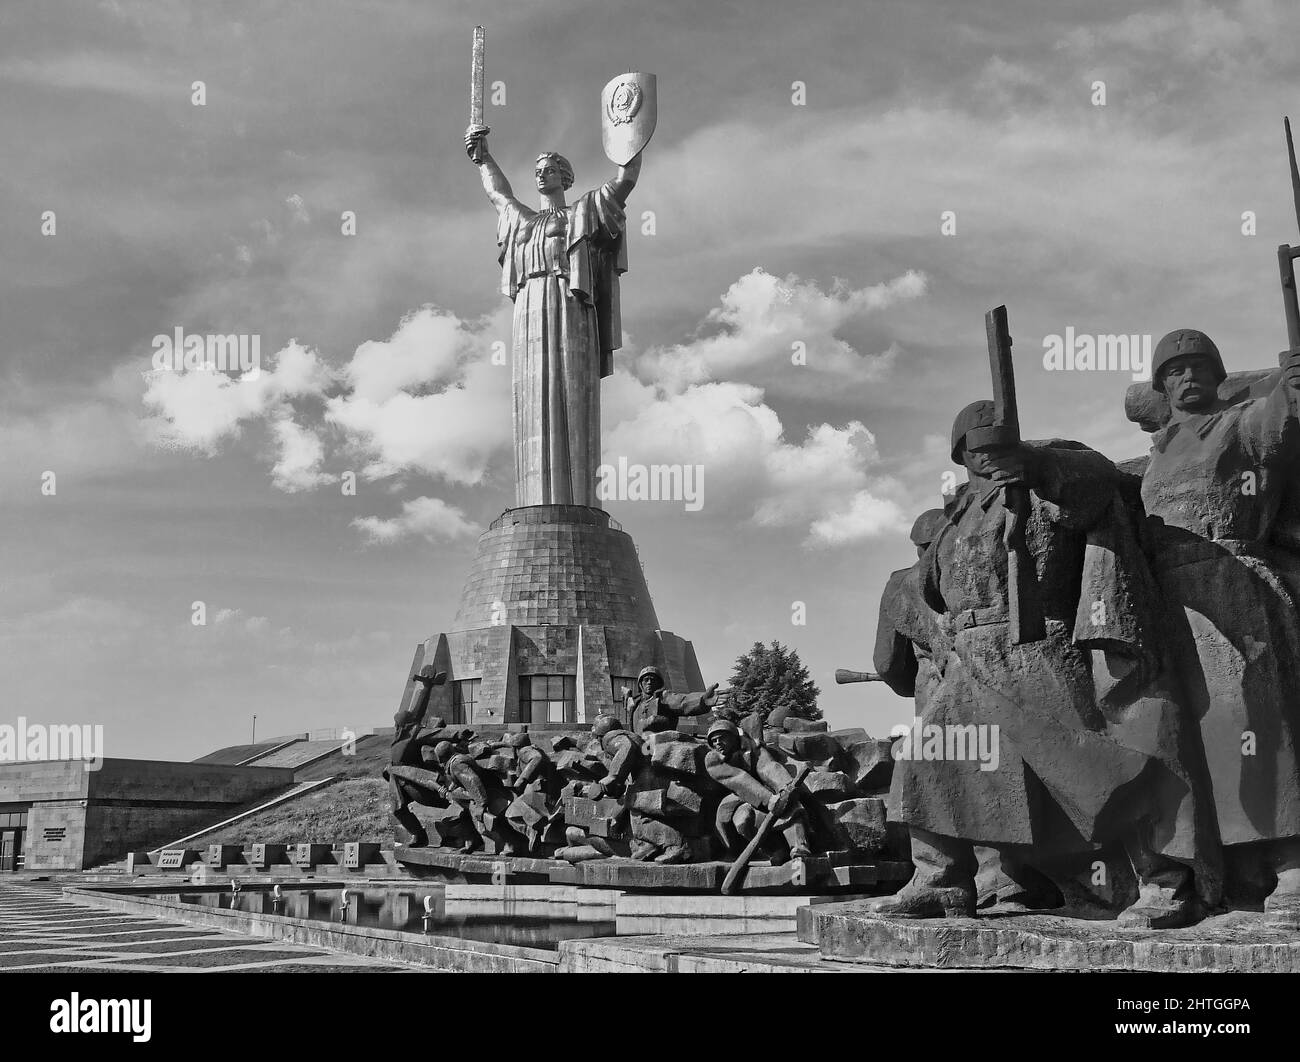 Le Monument de la mère patrie, la sculpture fait partie du Musée national de l'histoire de l'Ukraine pendant la Seconde Guerre mondiale Banque D'Images